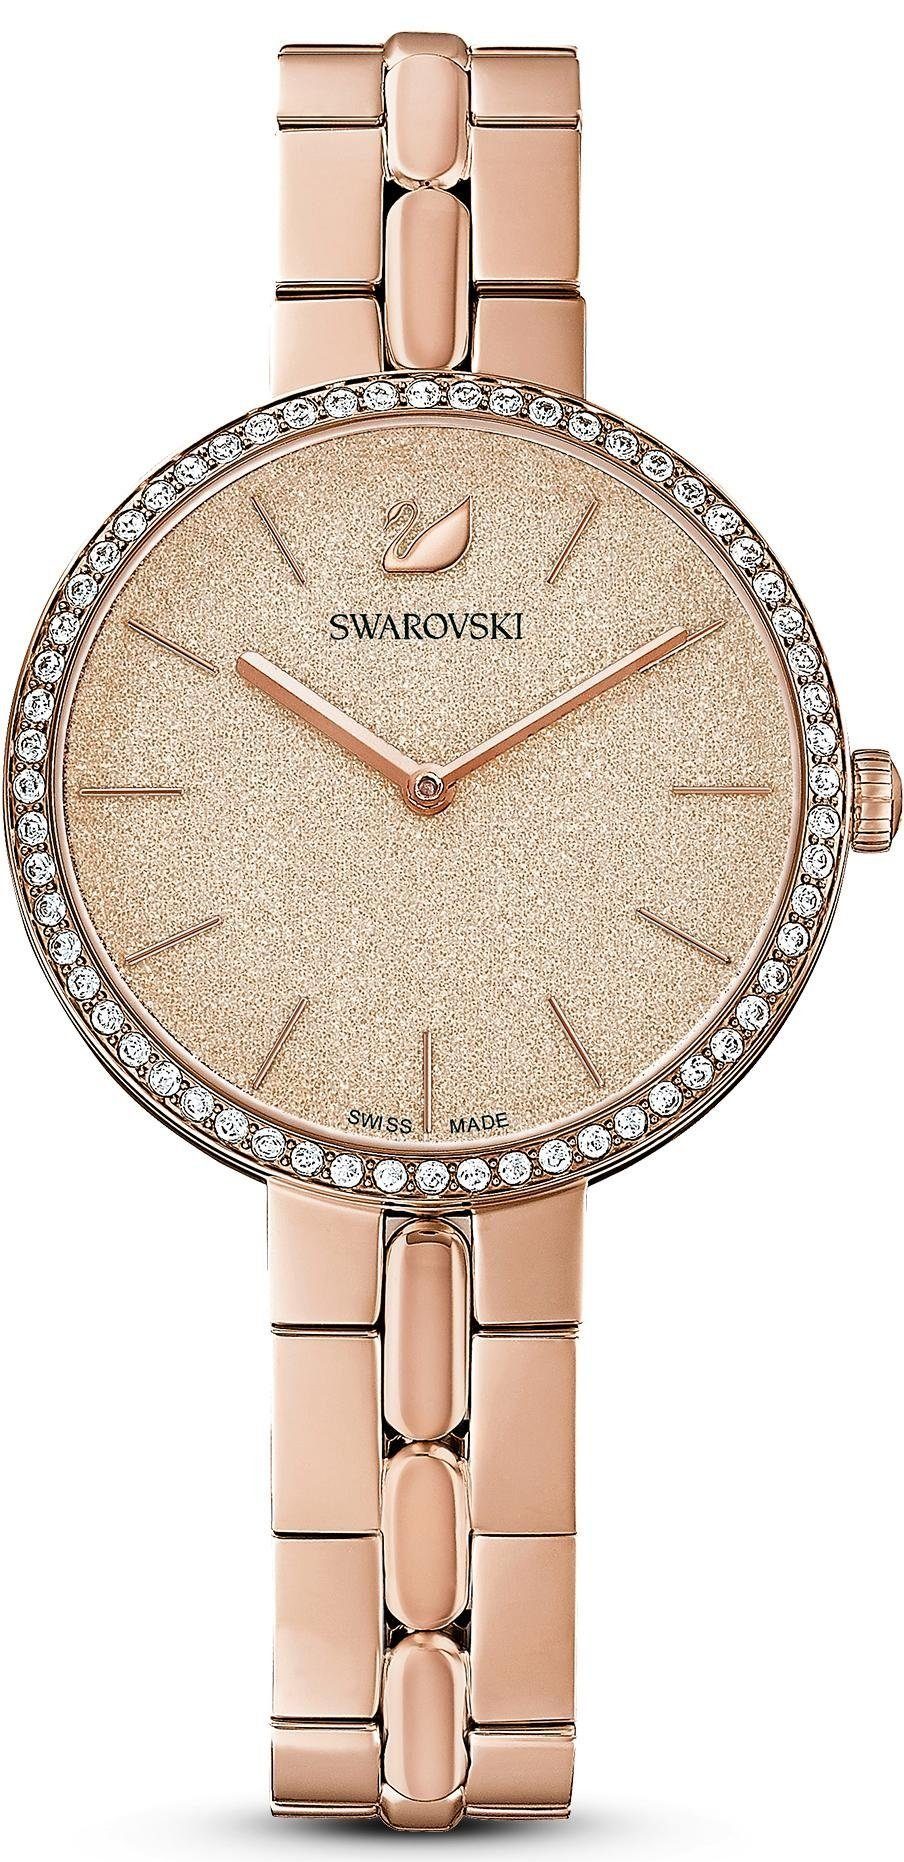 Swarovski Schweizer Uhr COSMOPOLITAN, 5517800 roségold